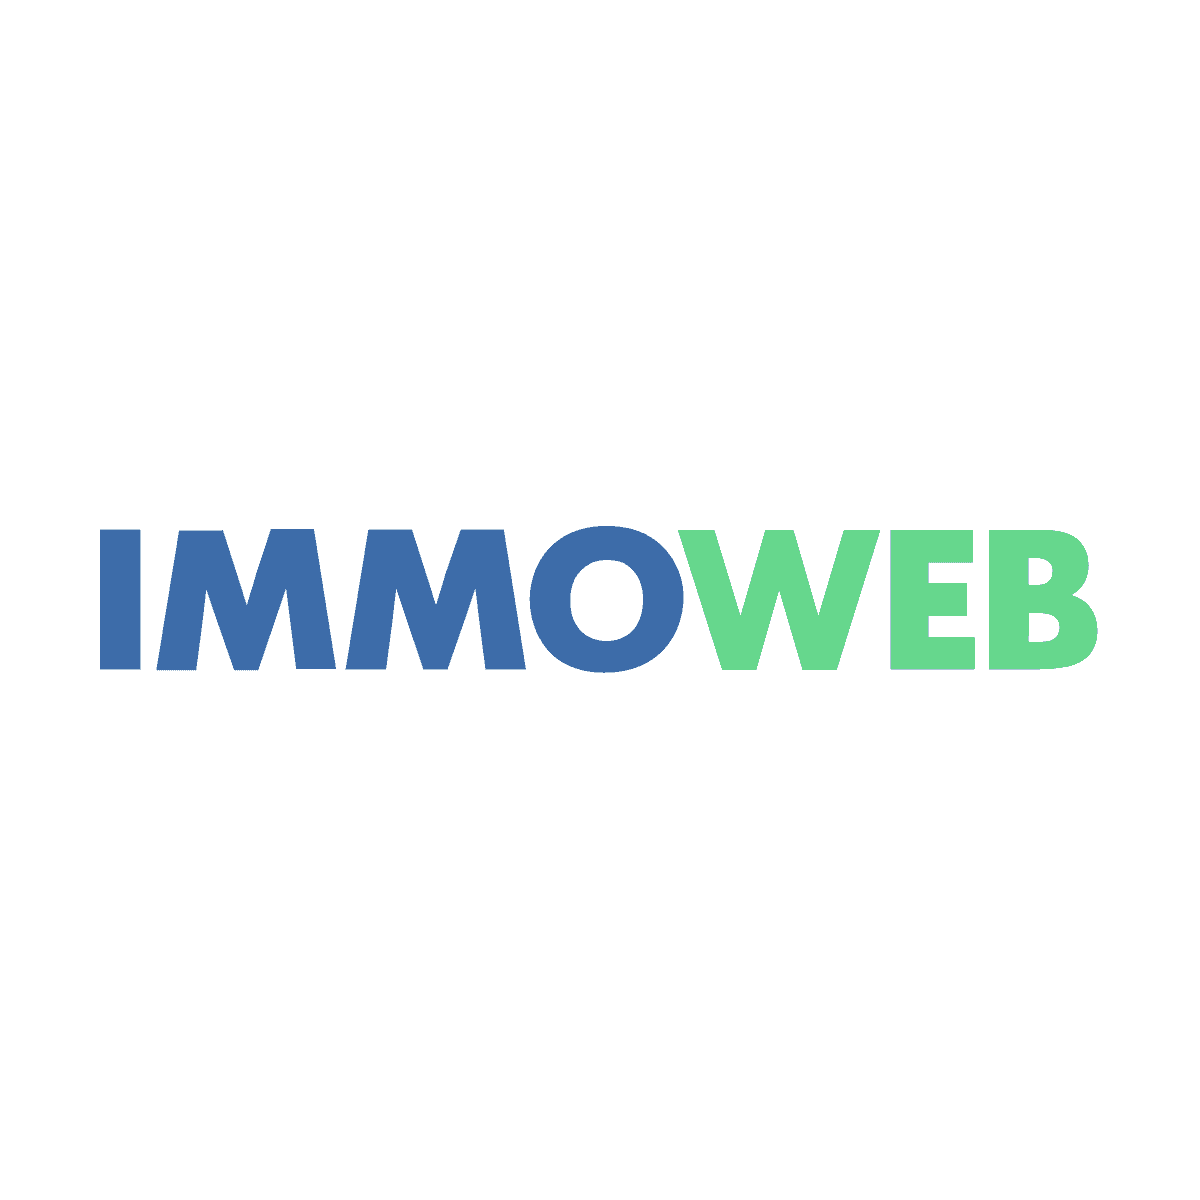 Immoweb Digital Signatures